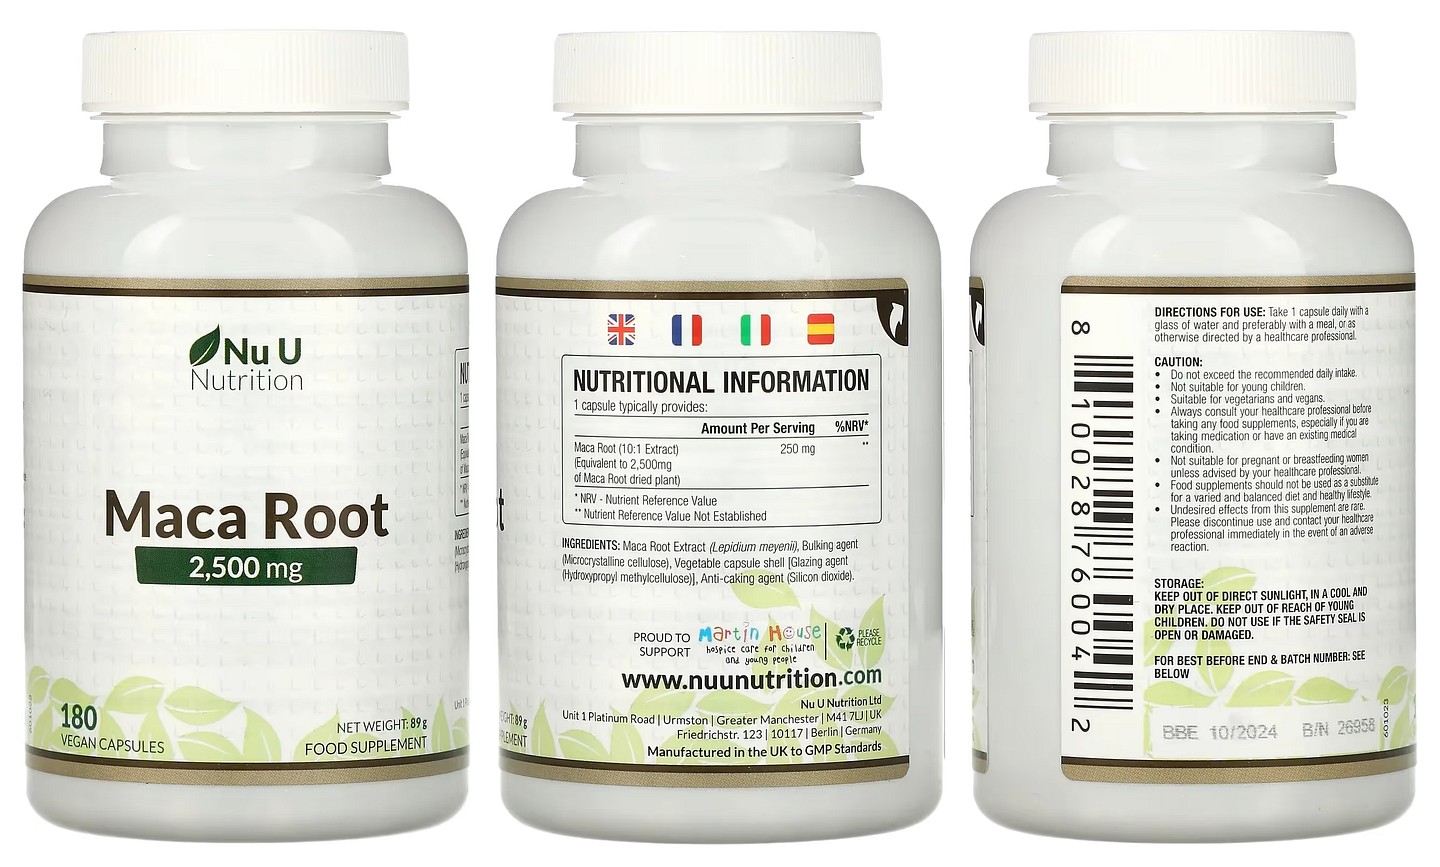 Nu U Nutrition, Maca Root packaging